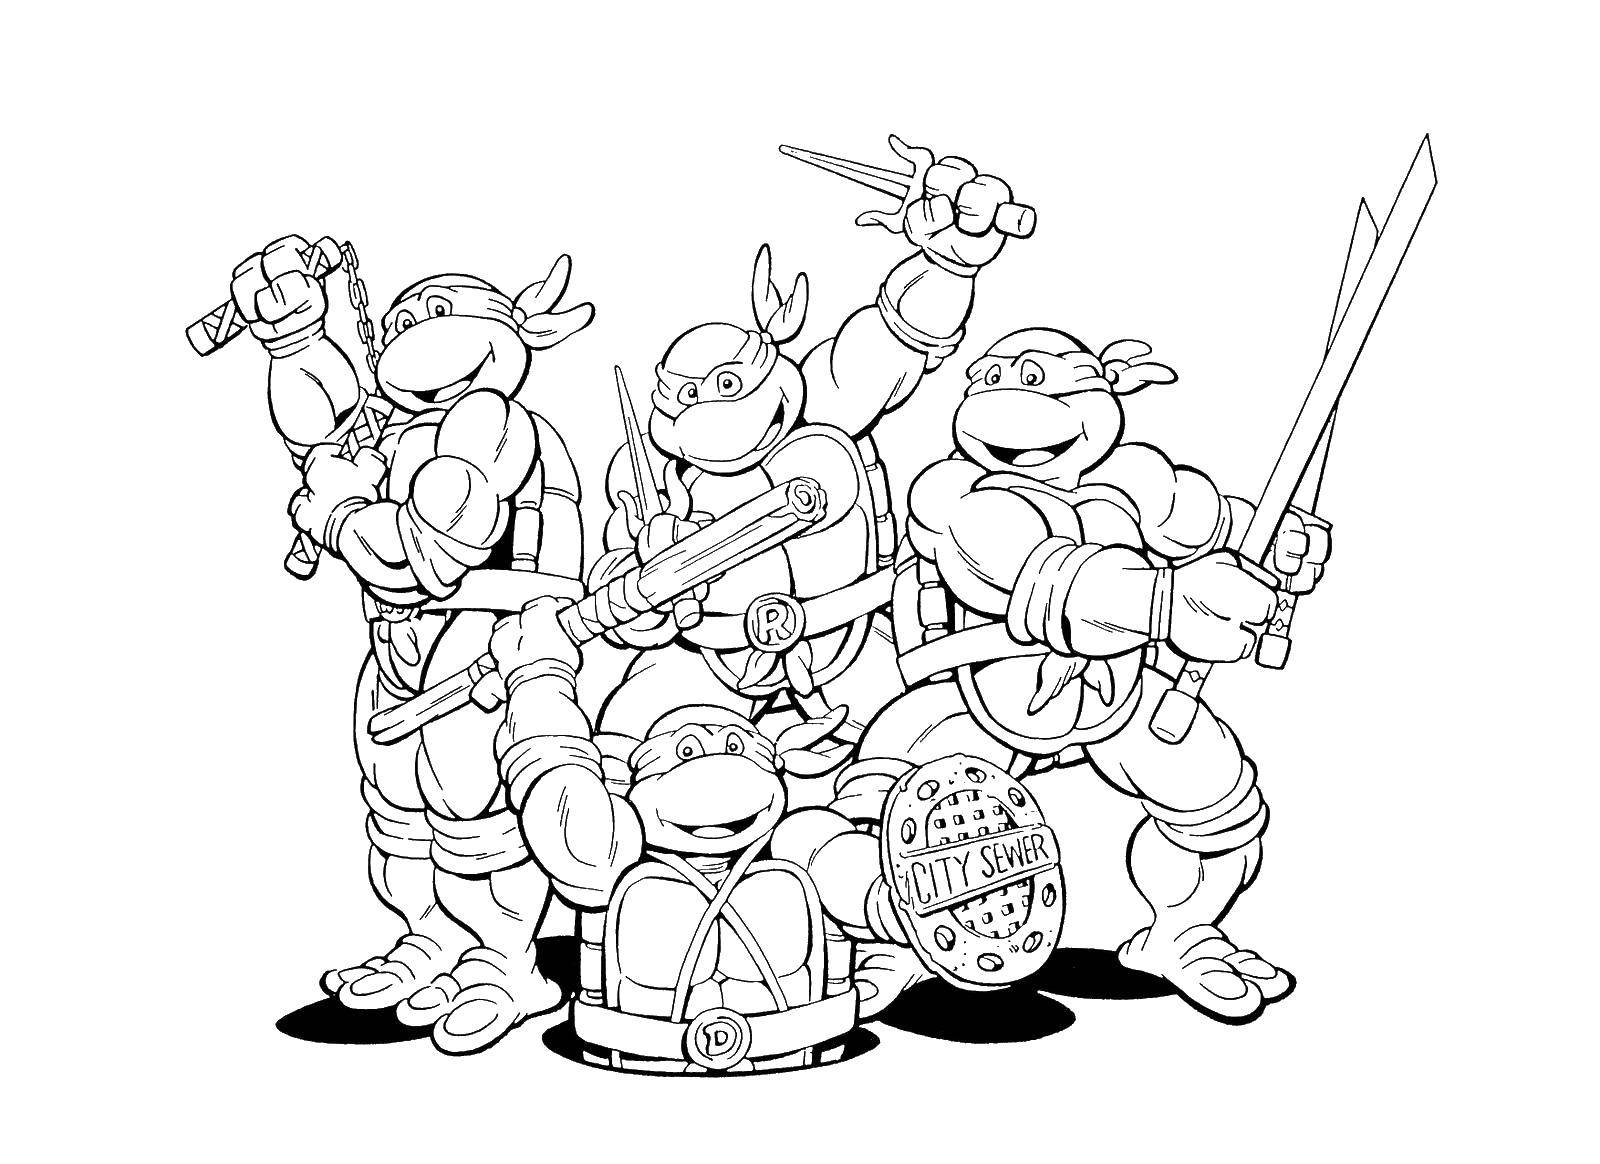 Coloring Teenage mutant ninja turtles. Category teenage mutant ninja turtles. Tags:  teenage mutant ninja turtles.